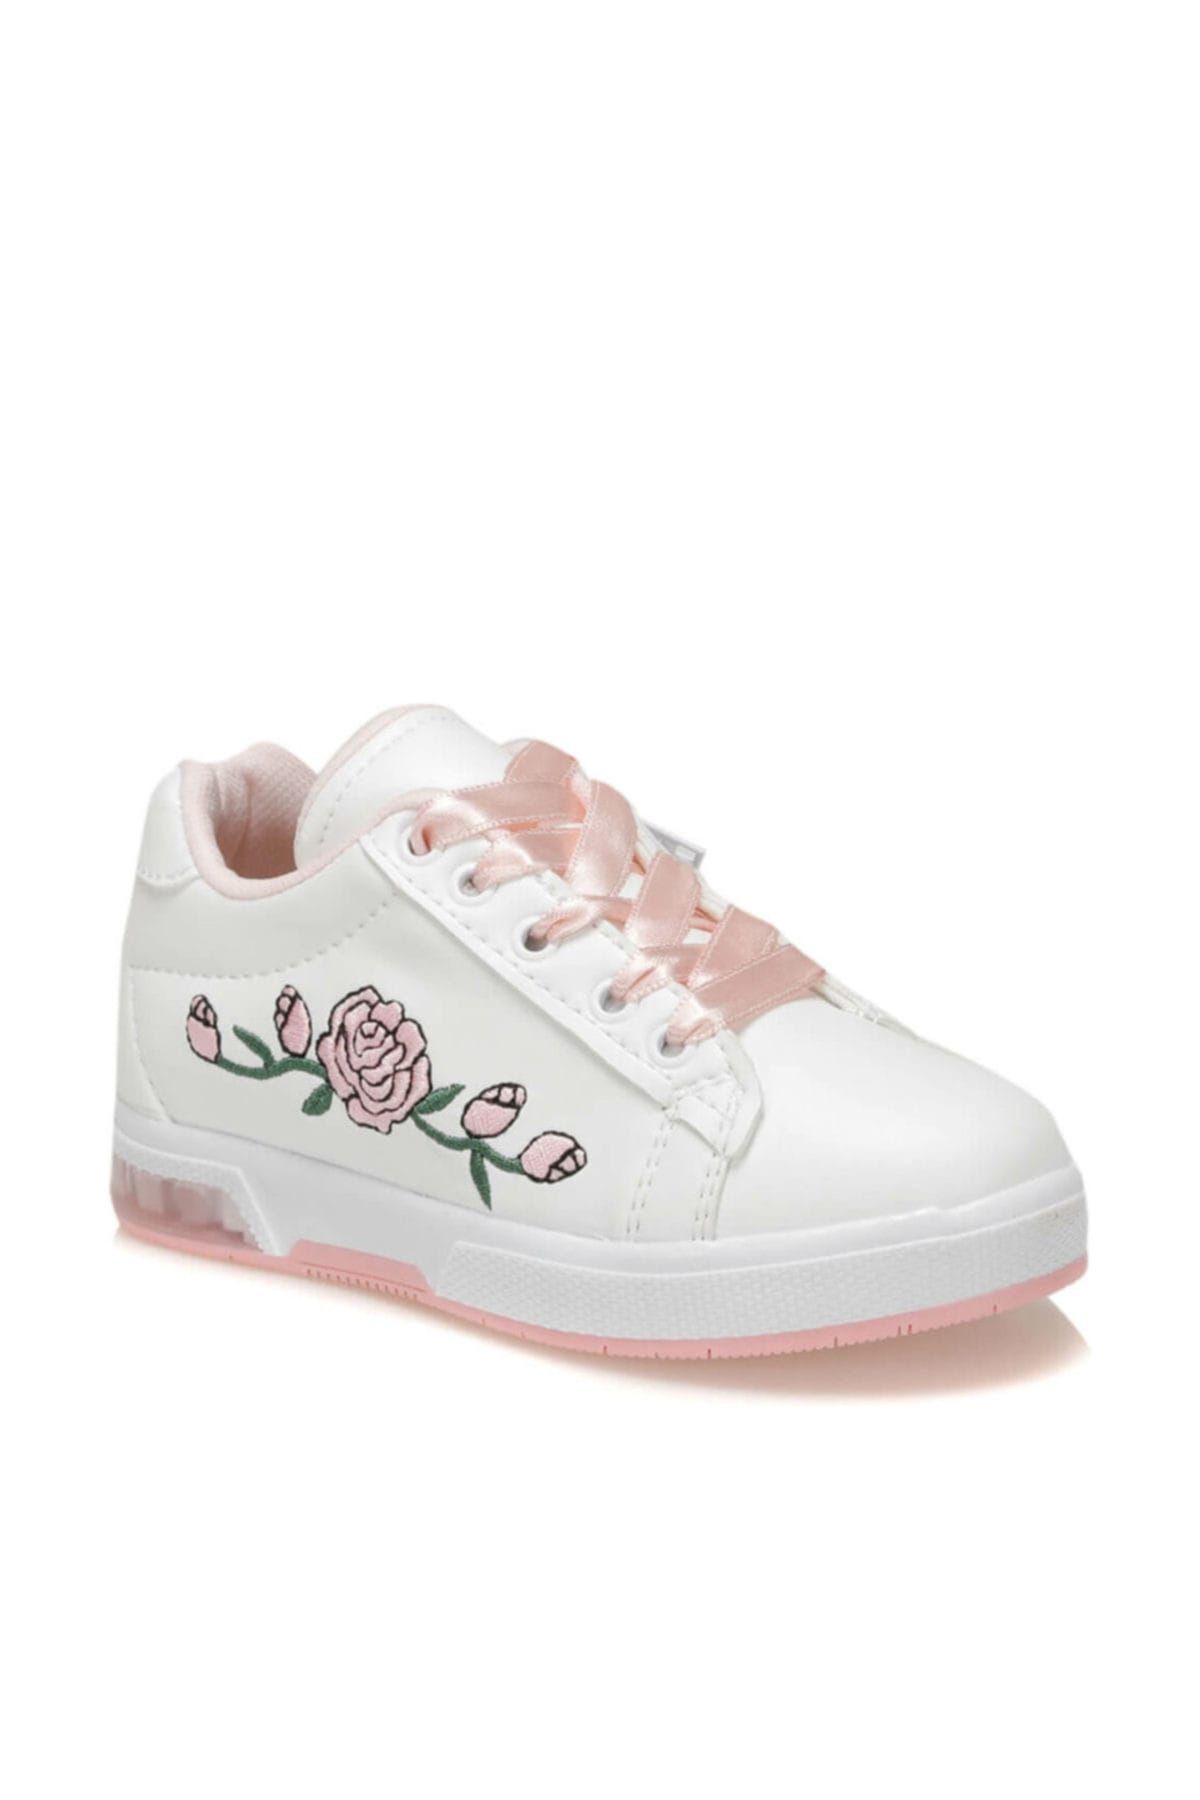 SEVENTEEN FLOWER-N Beyaz Kız Çocuk Sneaker Ayakkabı 100379692